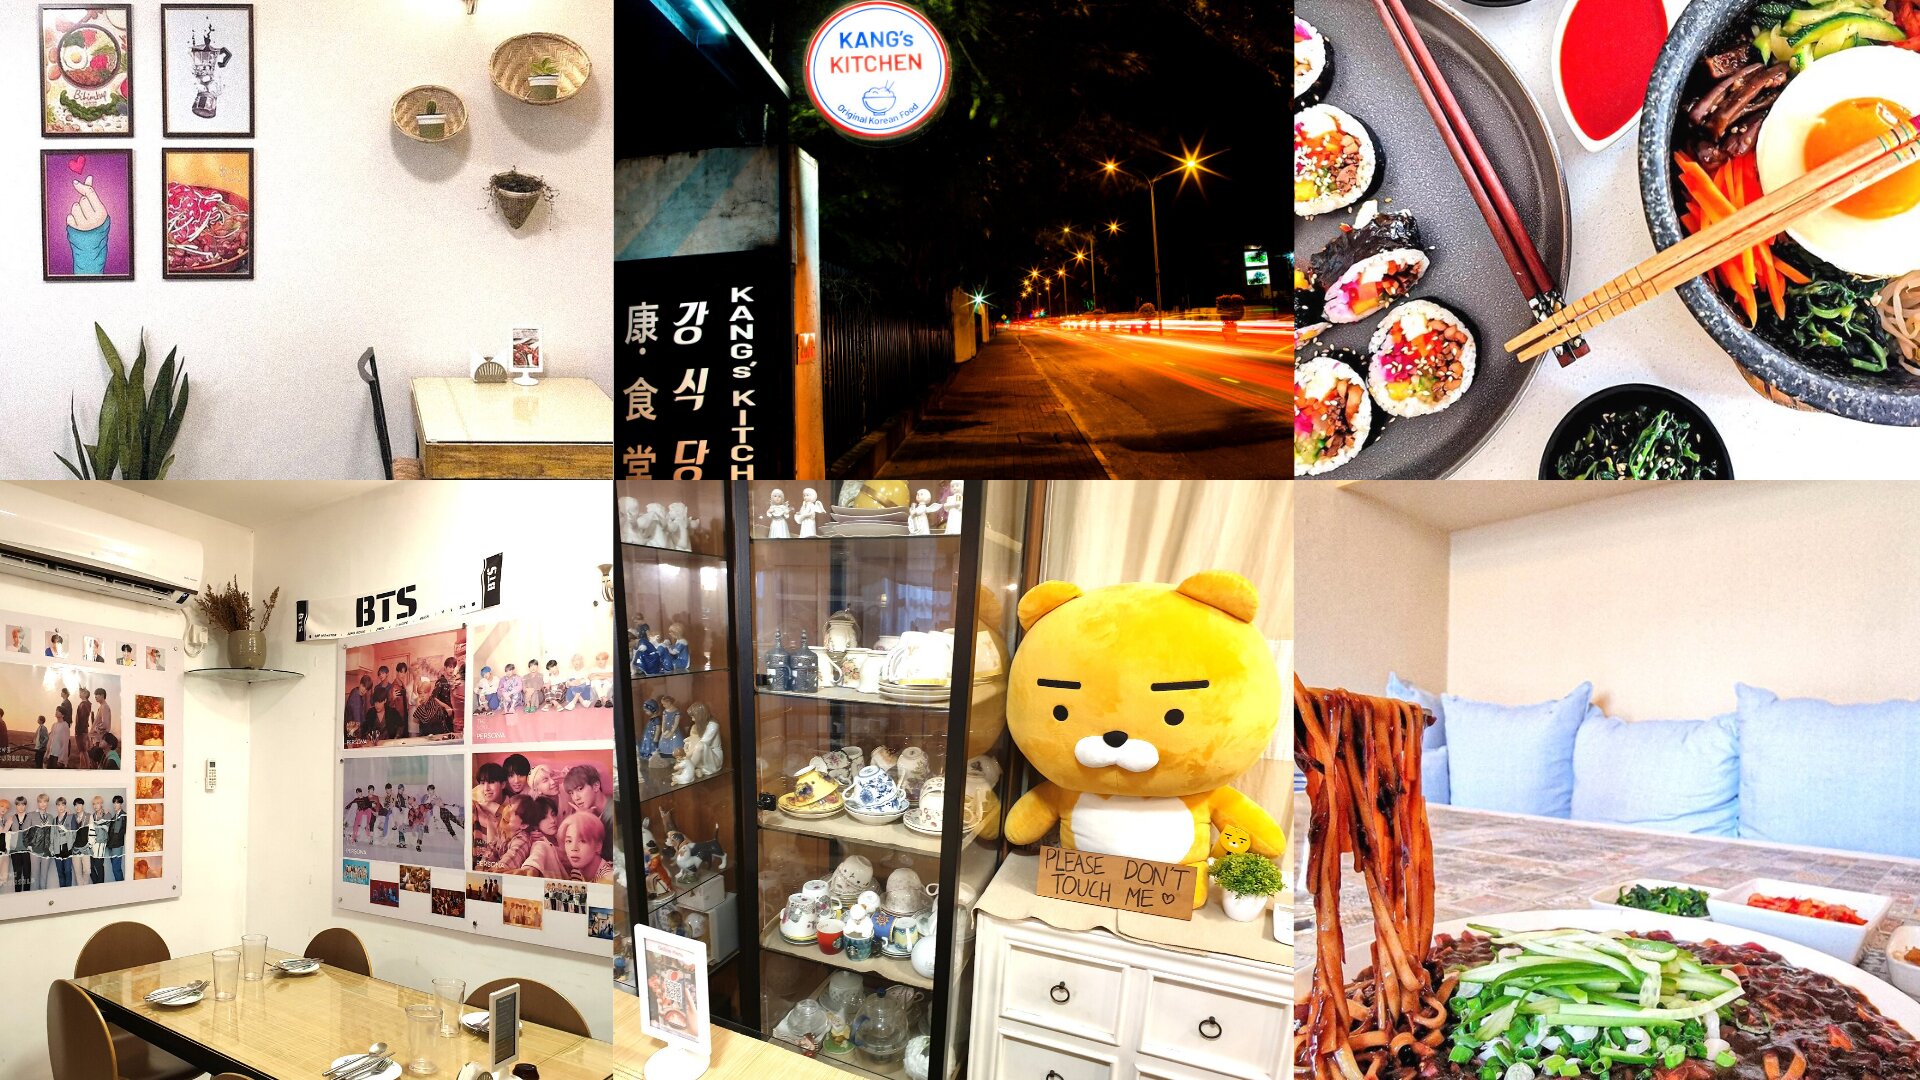 Food and interior of Kang’s Kitchen